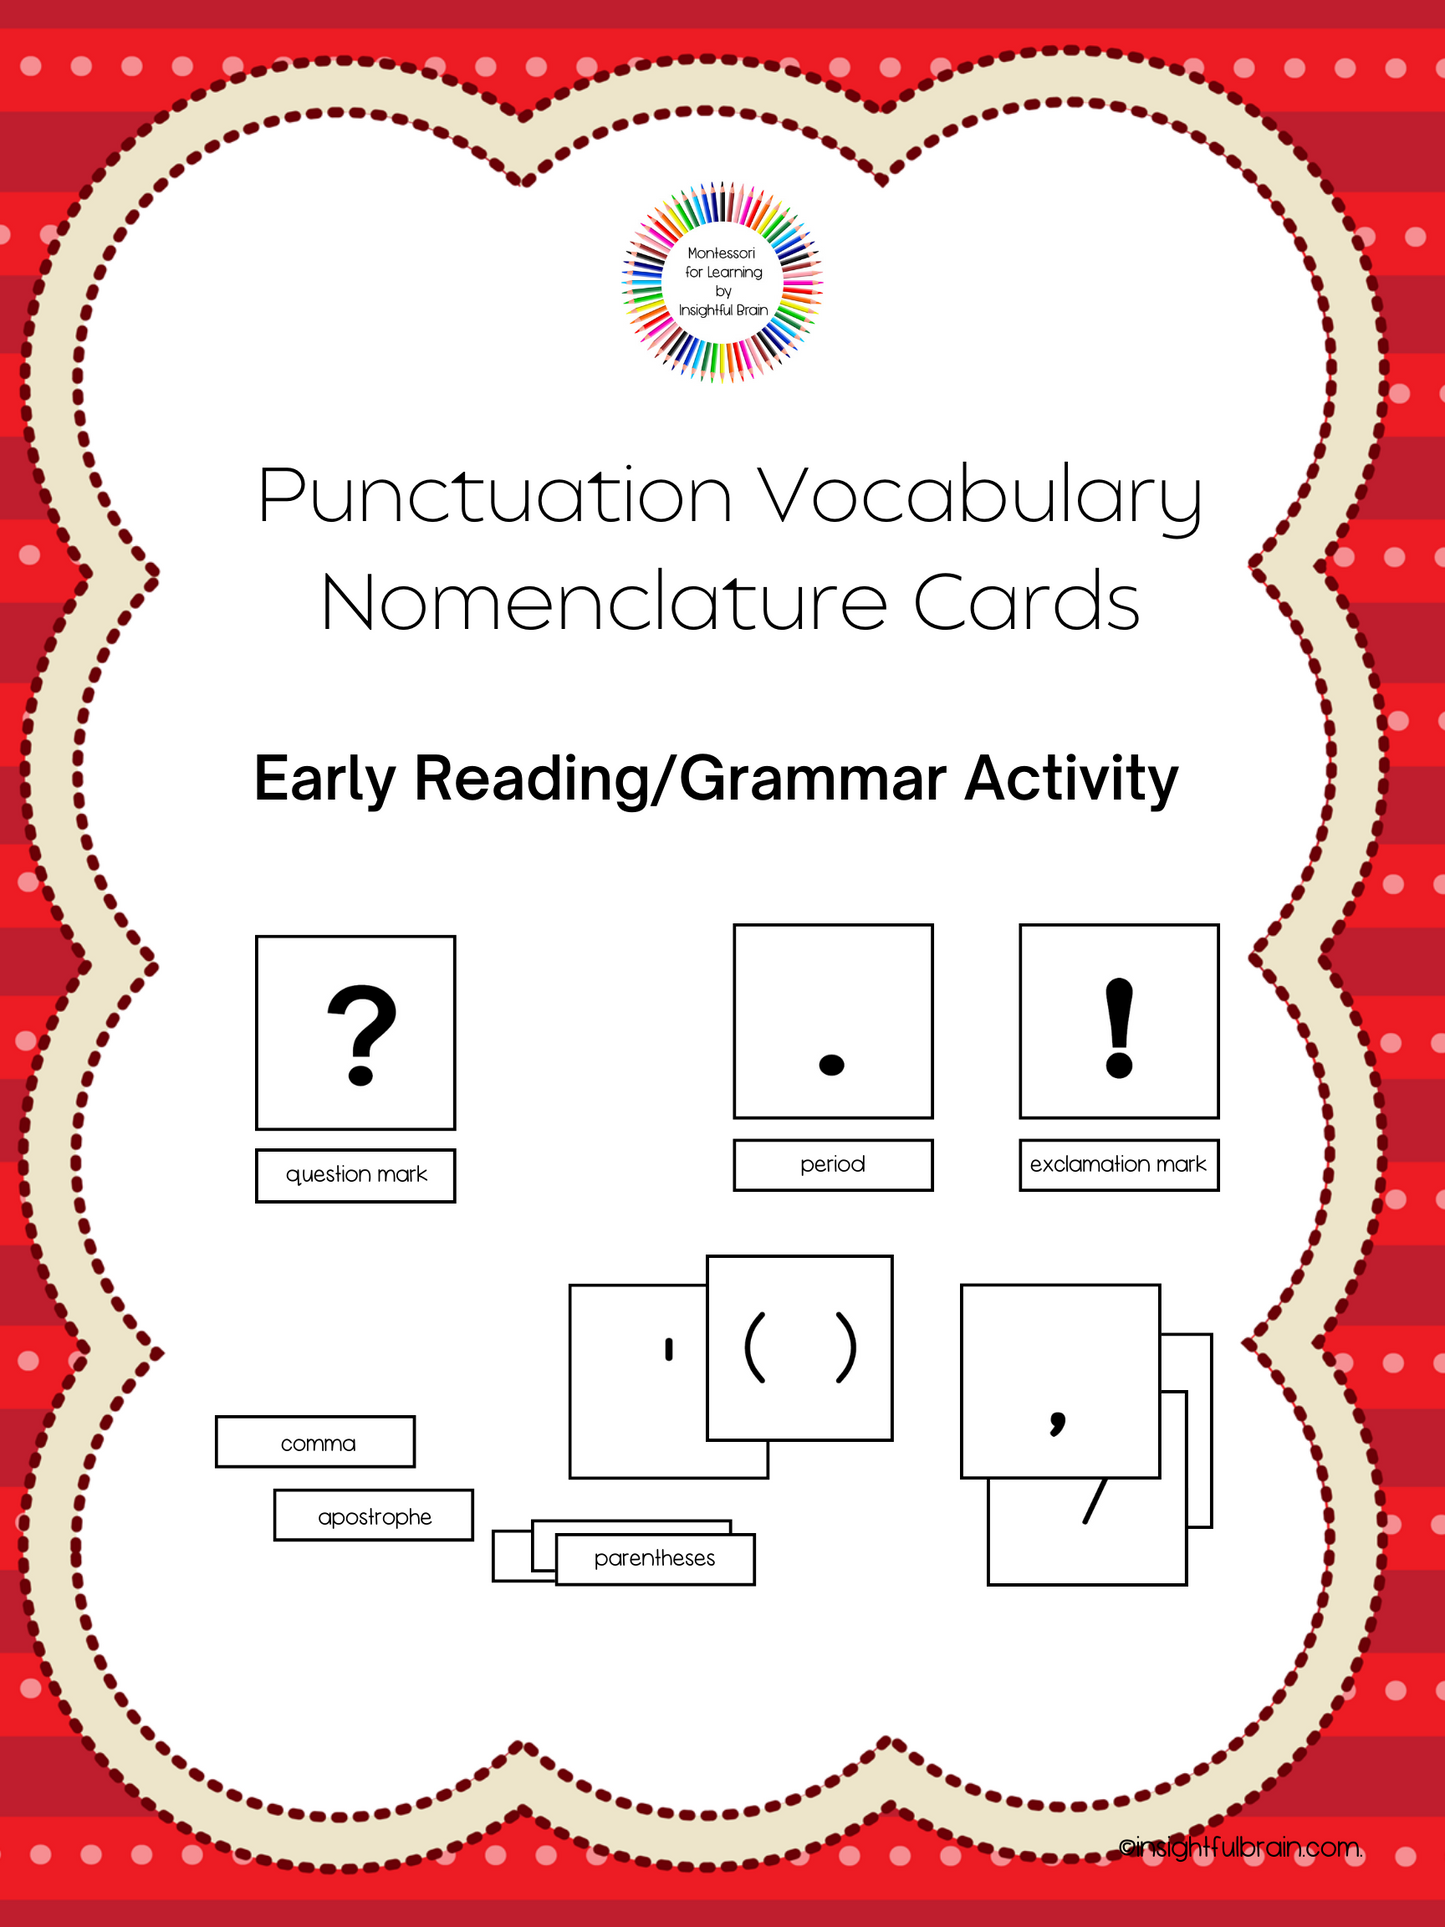 Punctuation Nomenclature Cards Grammar Activity (PDF Downlaod)